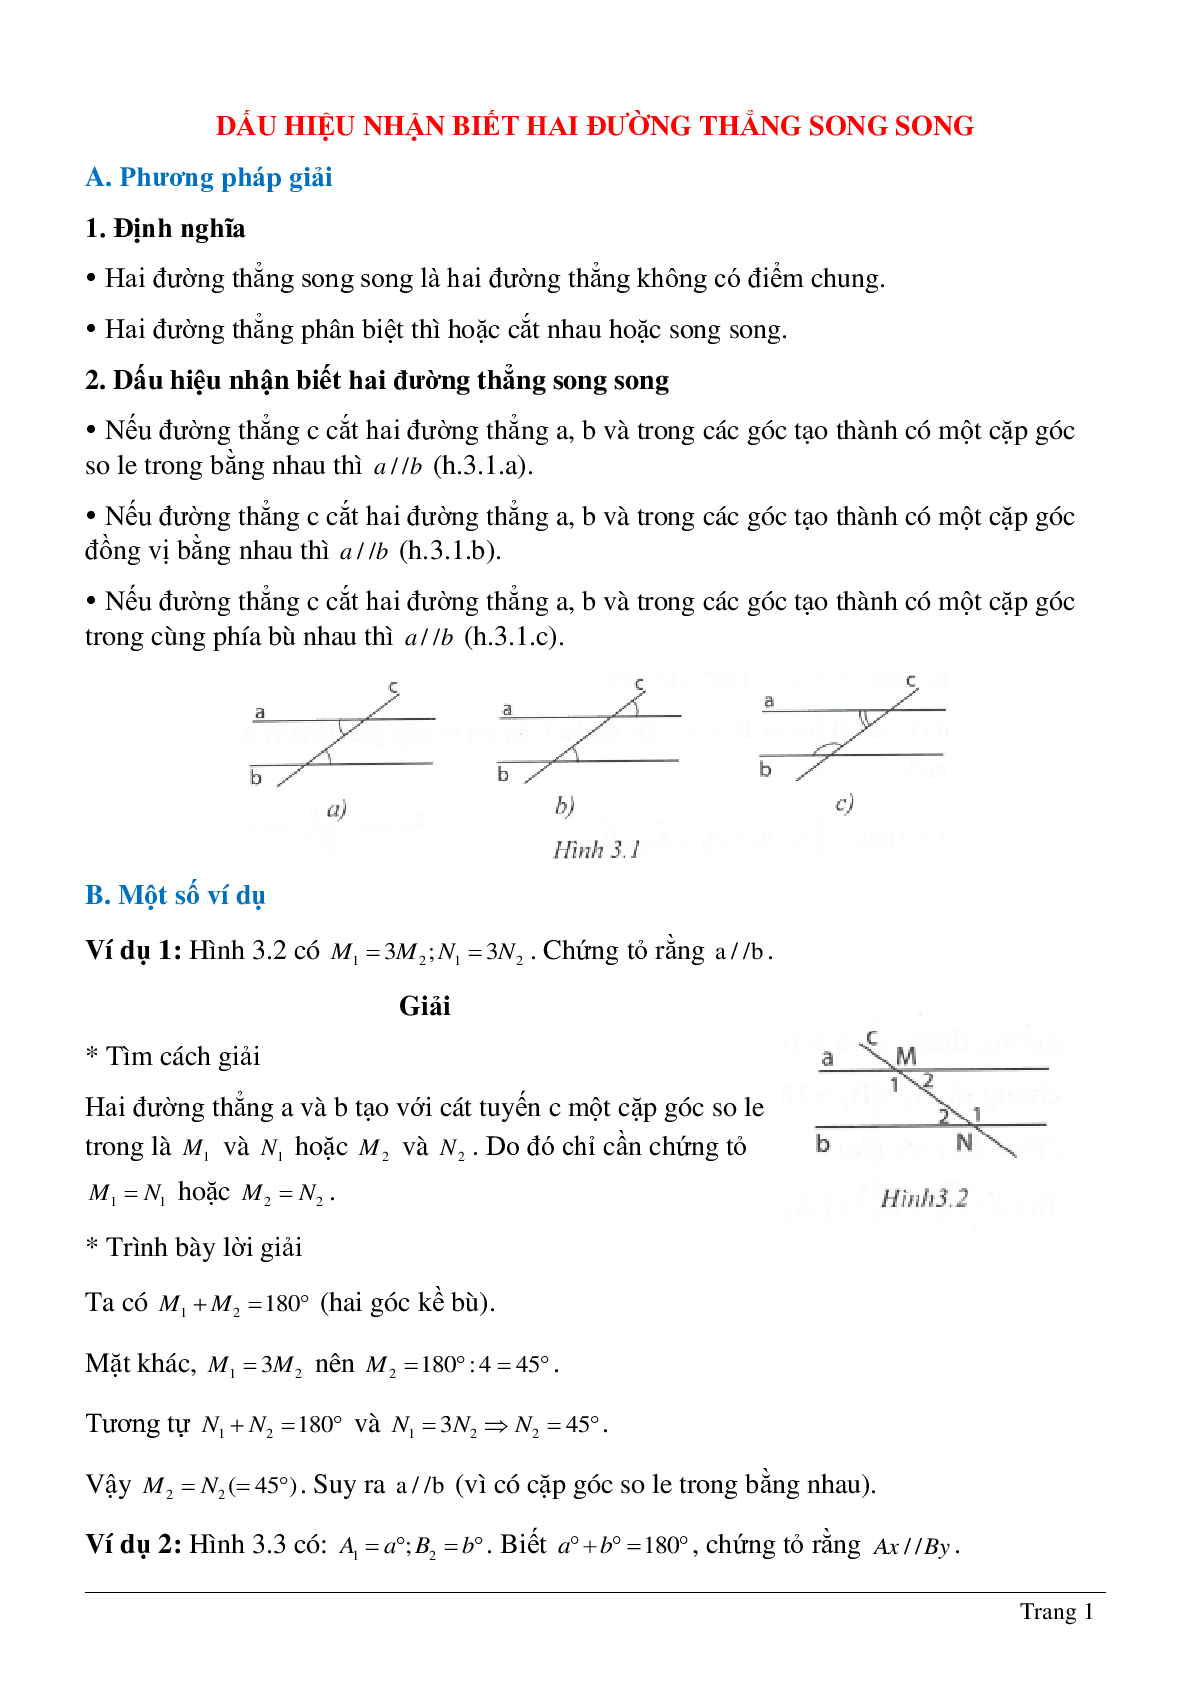 Phương pháp giải về Dấu hiệu hai đường thẳng song song hay nhất (trang 1)